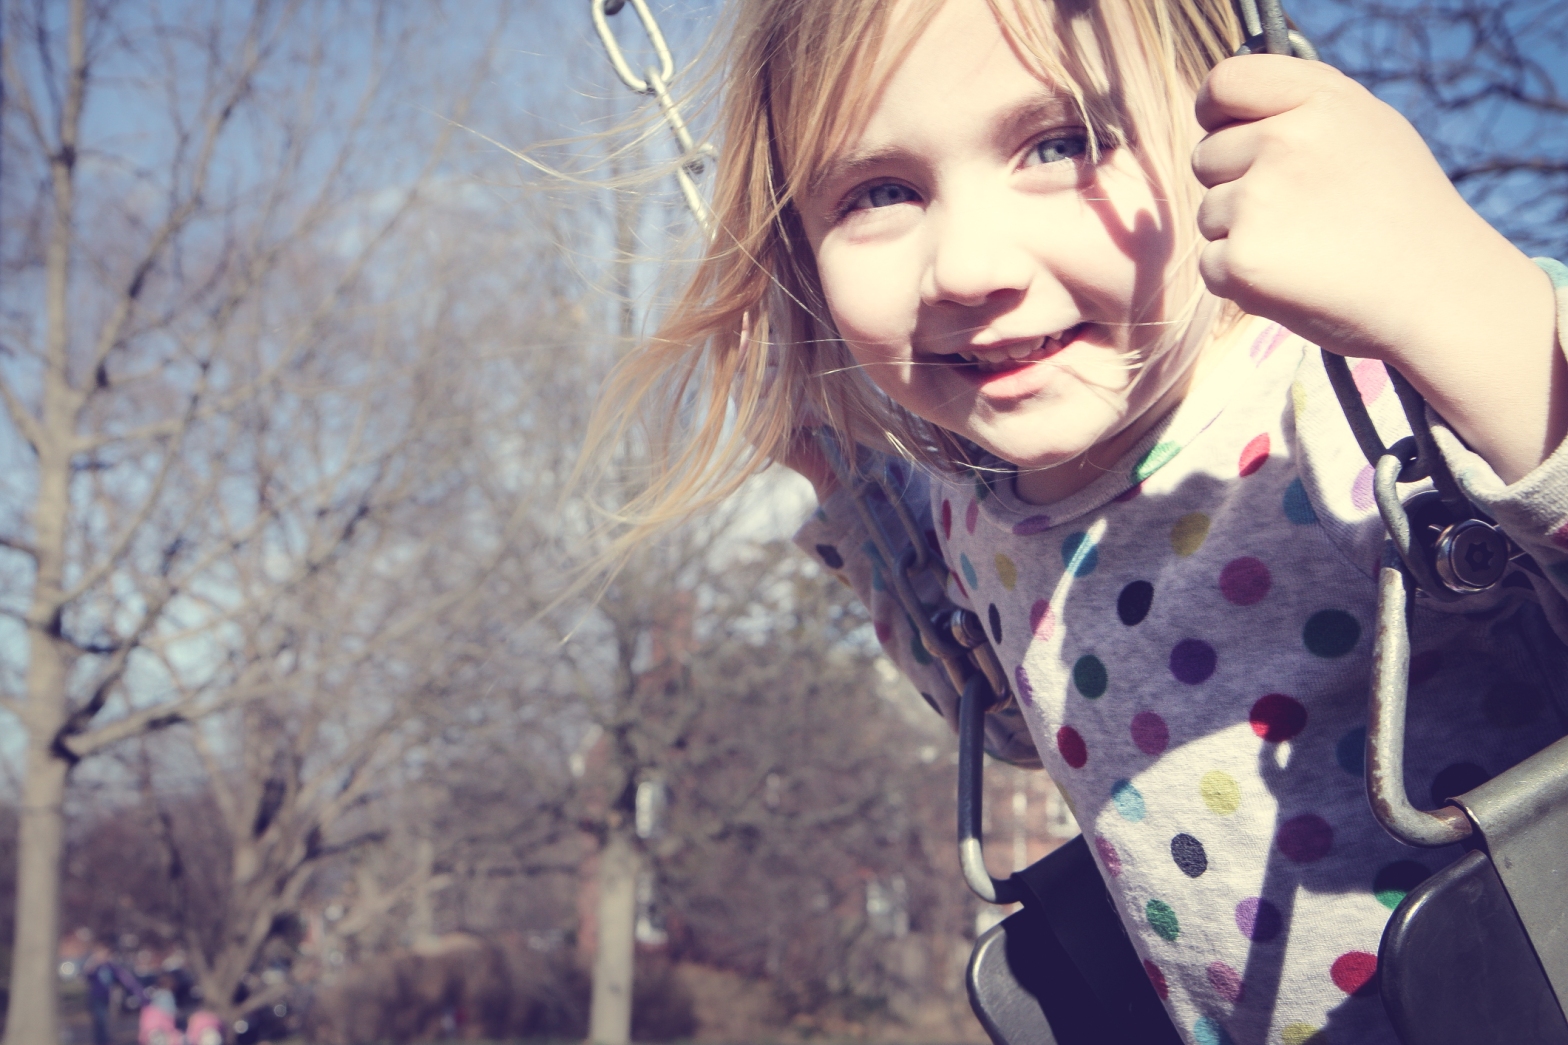 Girl swings on a sunny day in winter NotSoSAHM